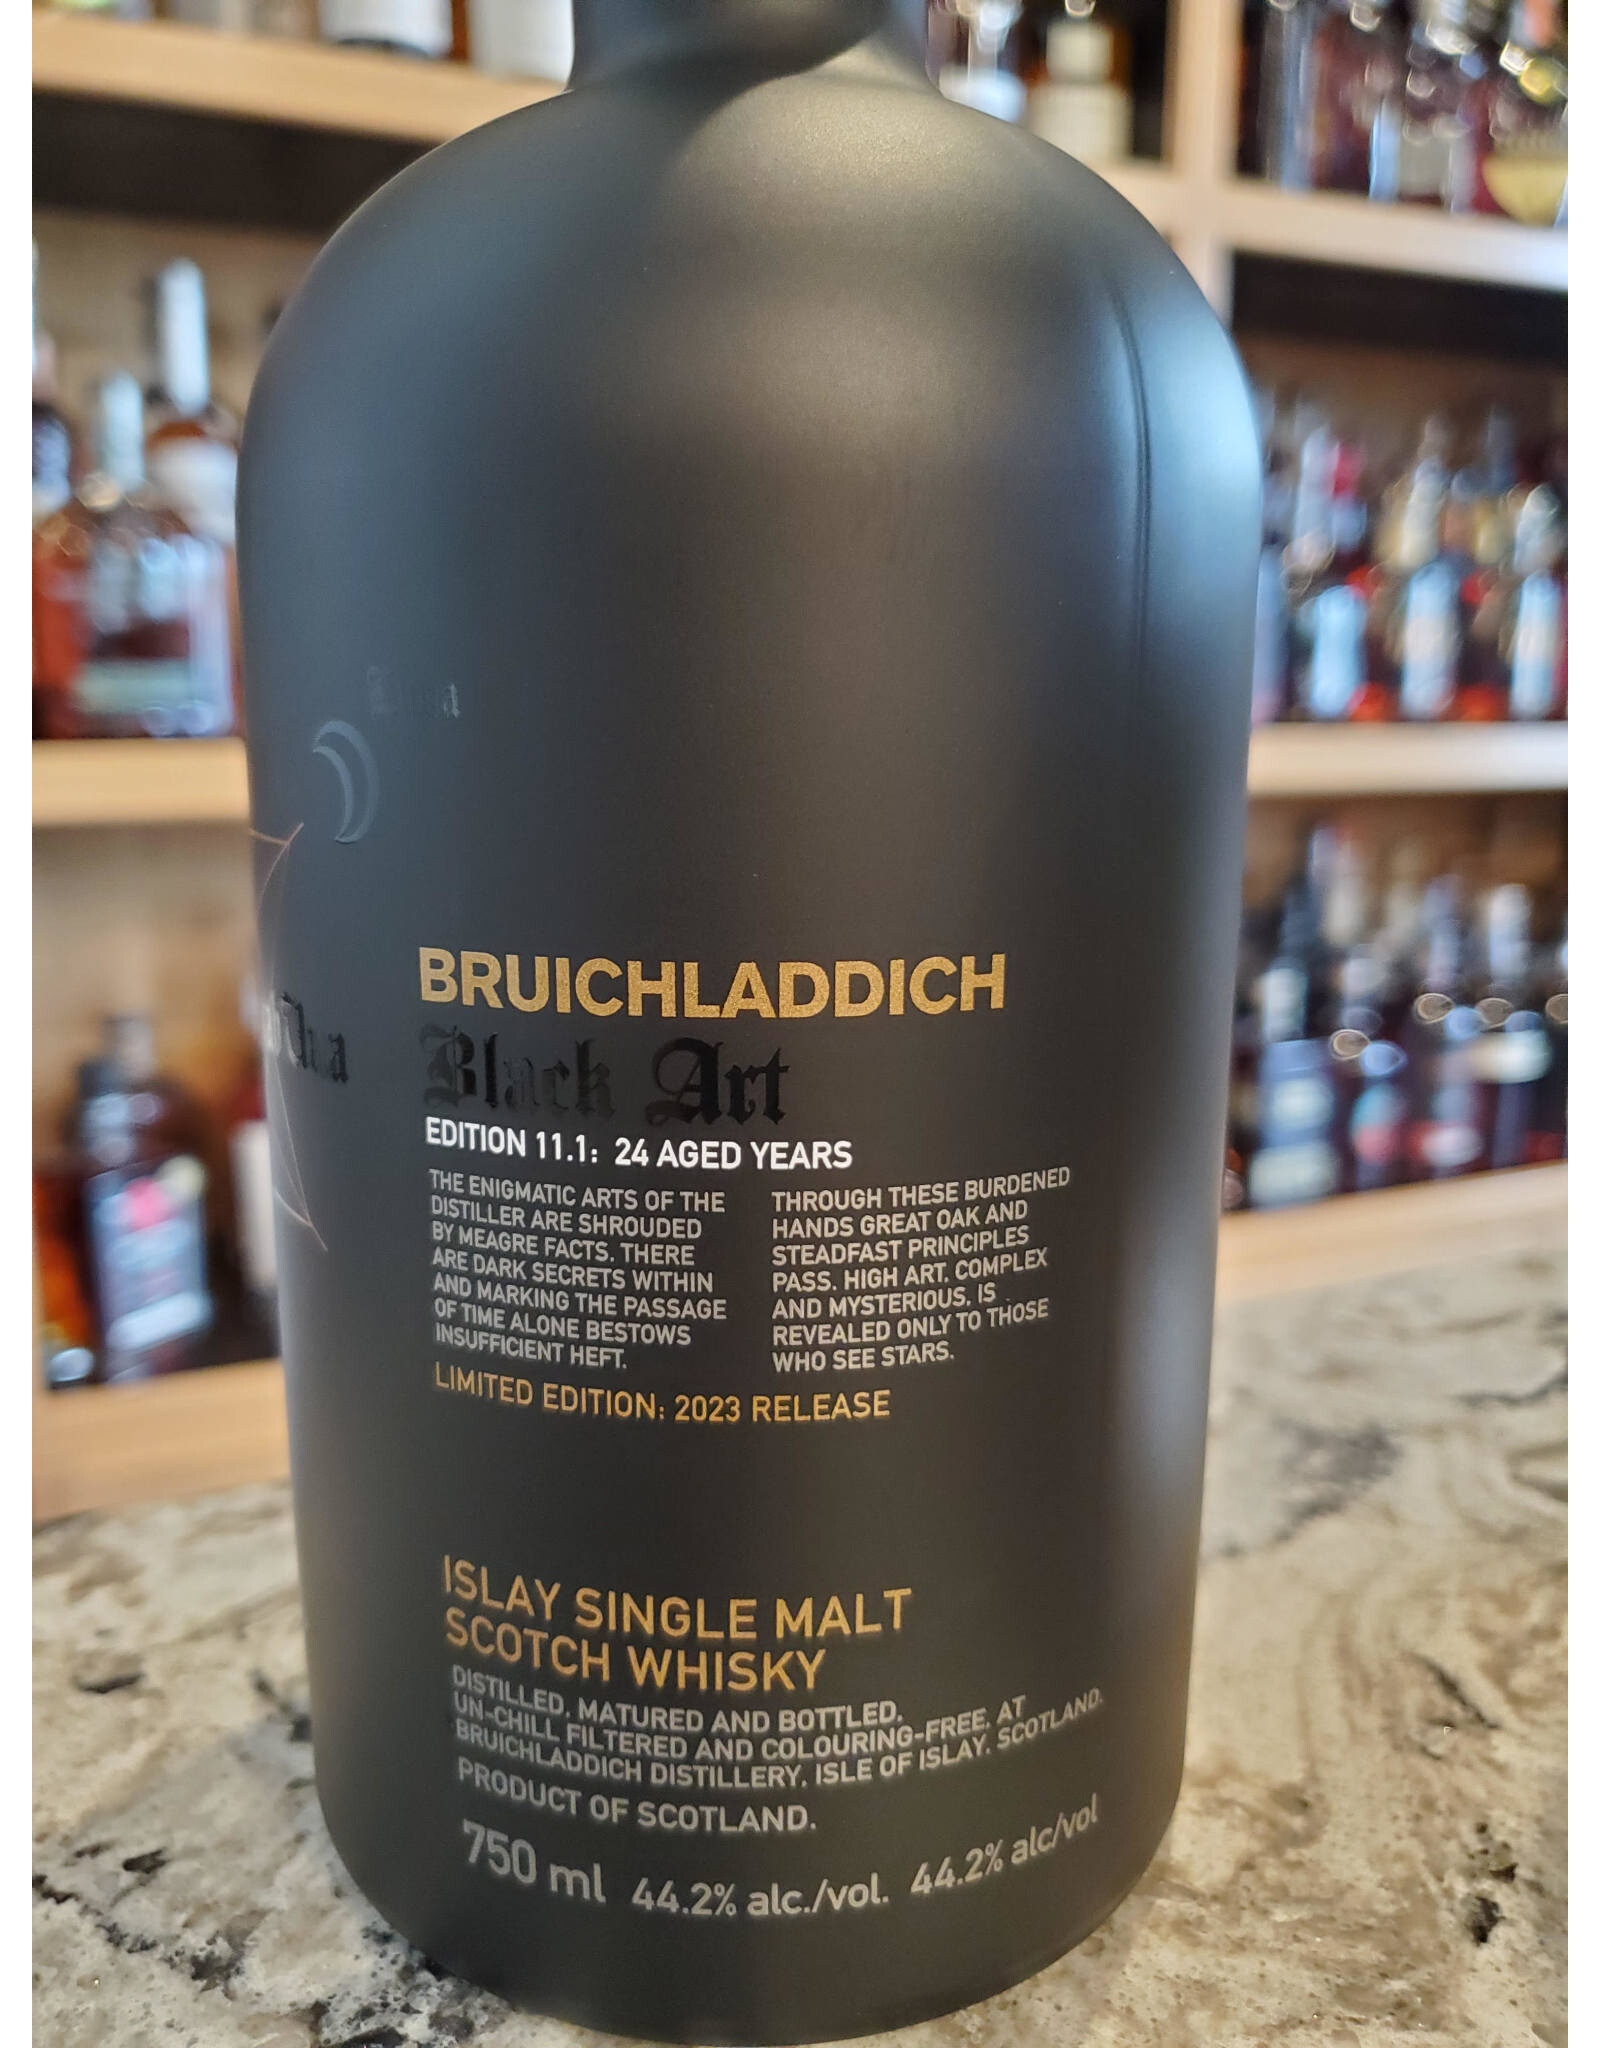 Bruichladdich, Black Art, 24 Year, Single Malt Scotch, Edition 11.1, 2023